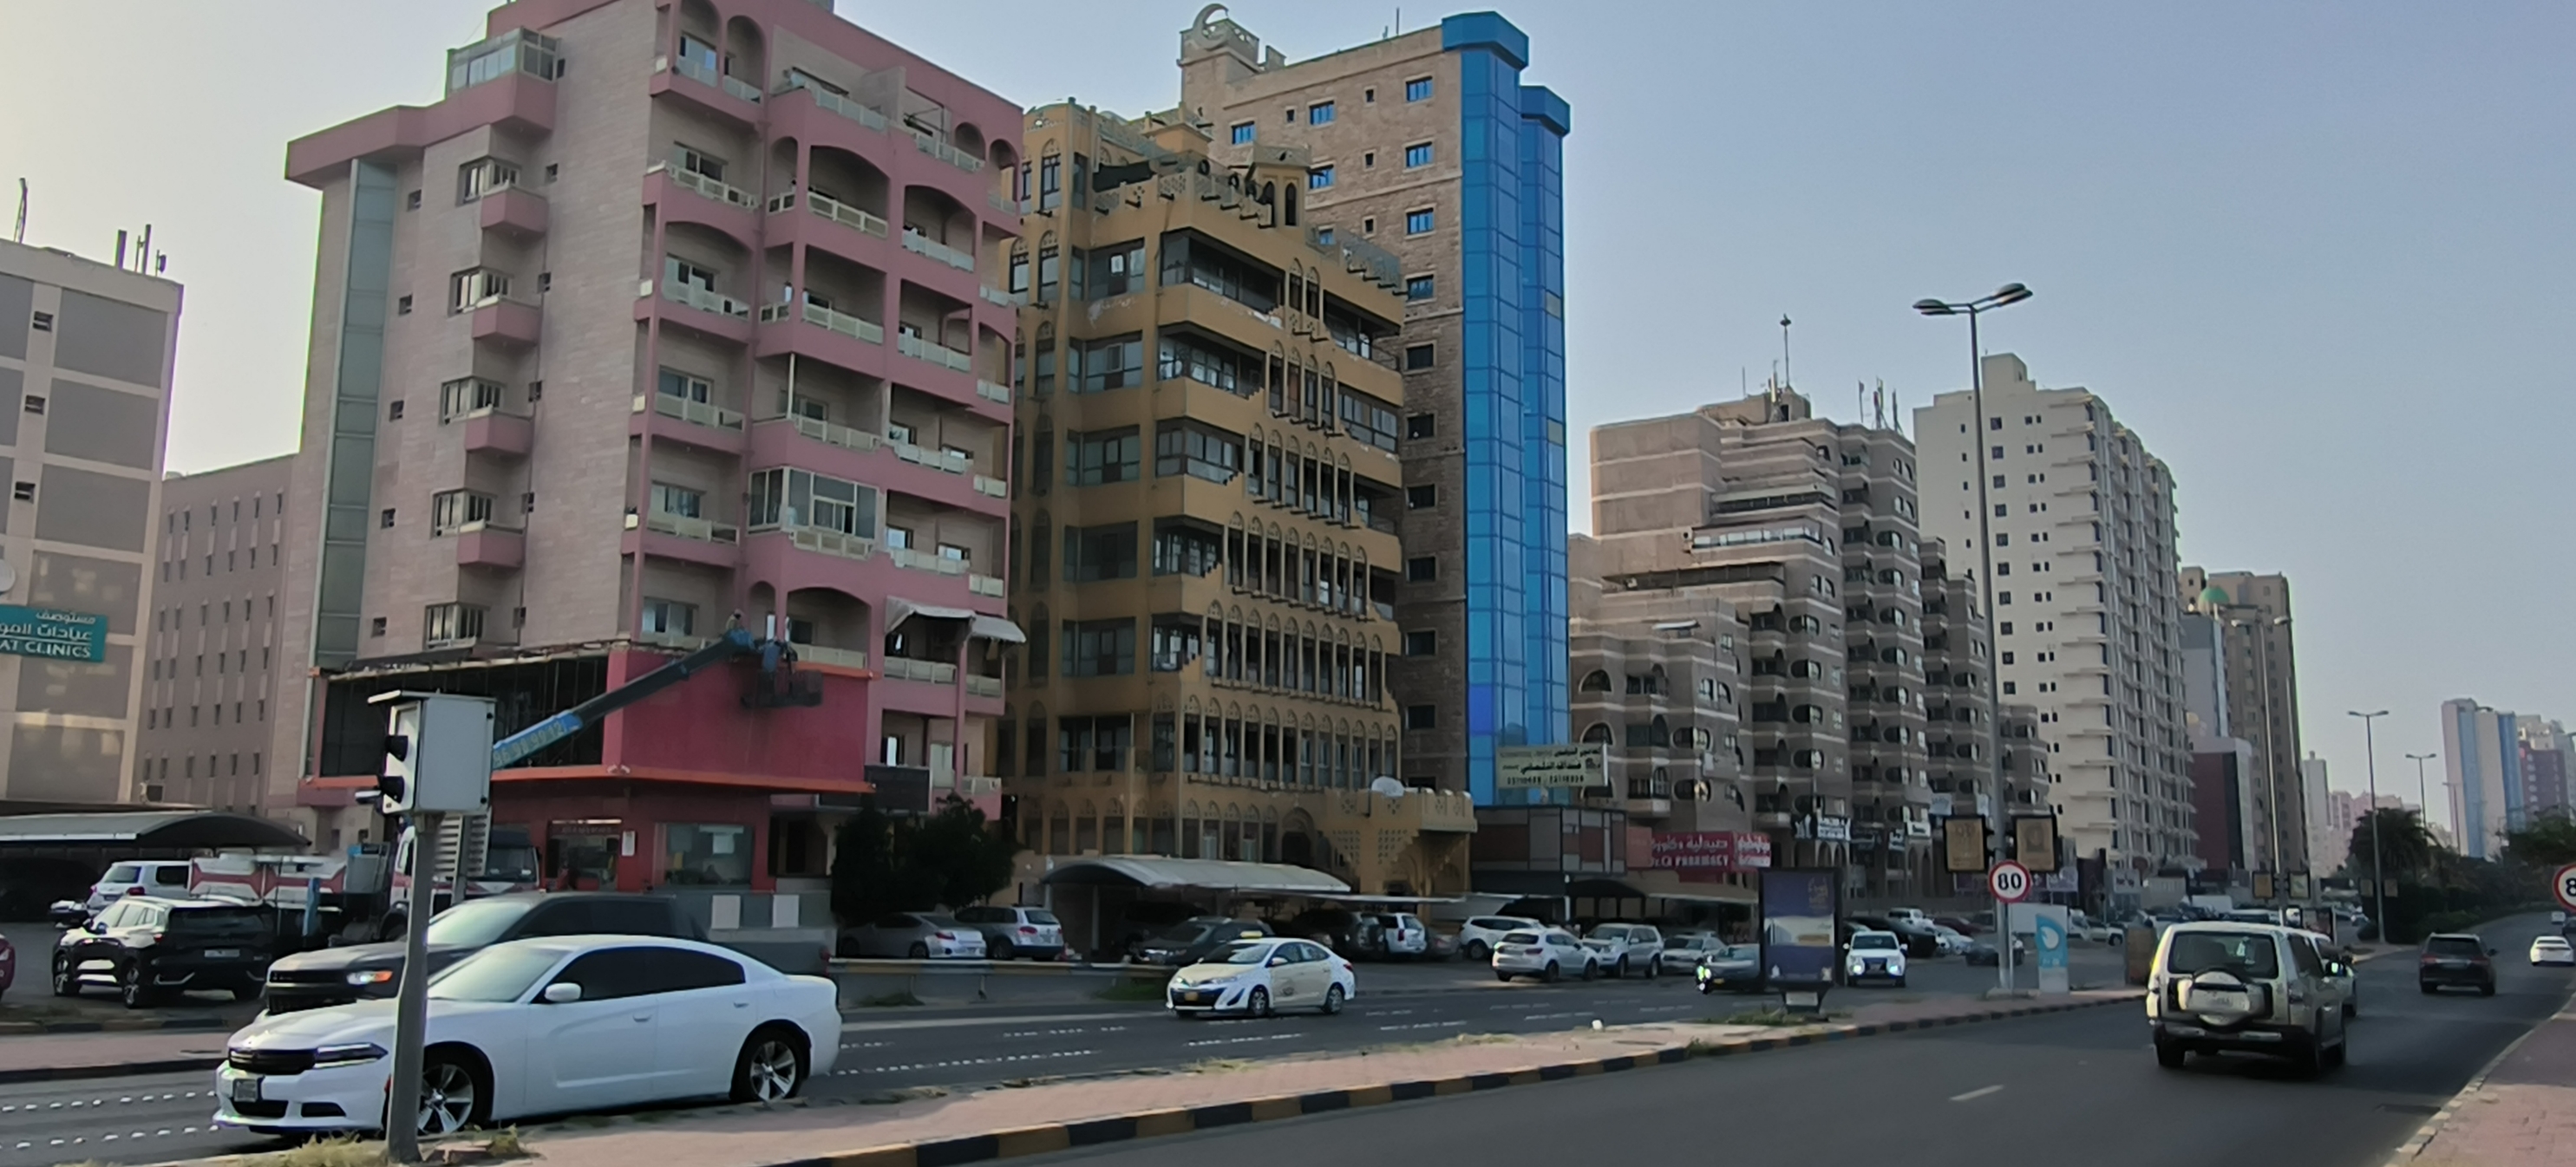 科威特曼卡夫，哈法希尔商务区，中东海湾国家特色的建筑，异域风情浓郁。一看就是穆斯林风格。